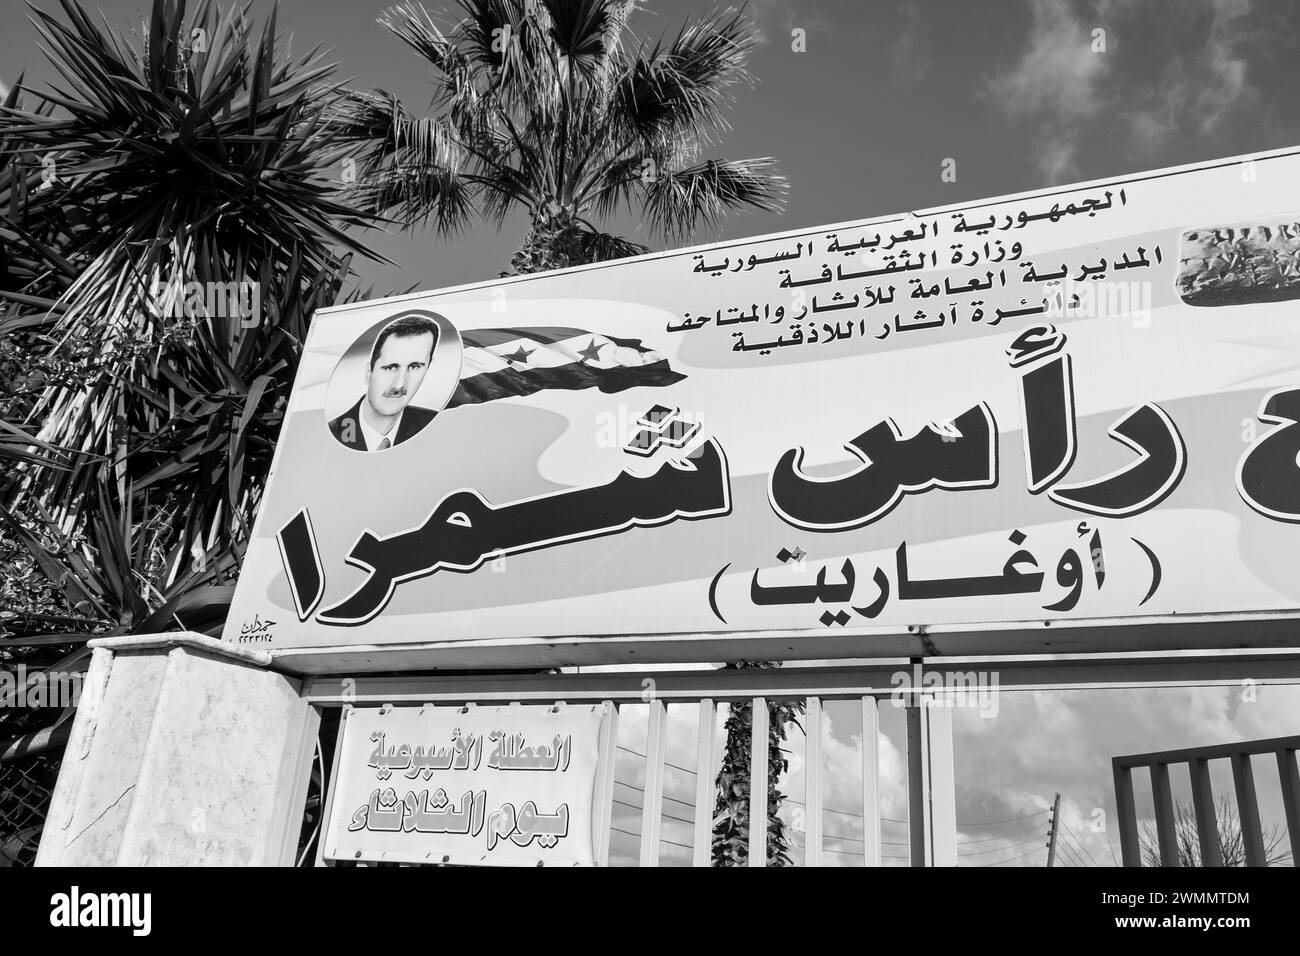 Syrie, Ougarit, Ougaret, panneau d'affichage avec photographie de Bachar al Assad Banque D'Images